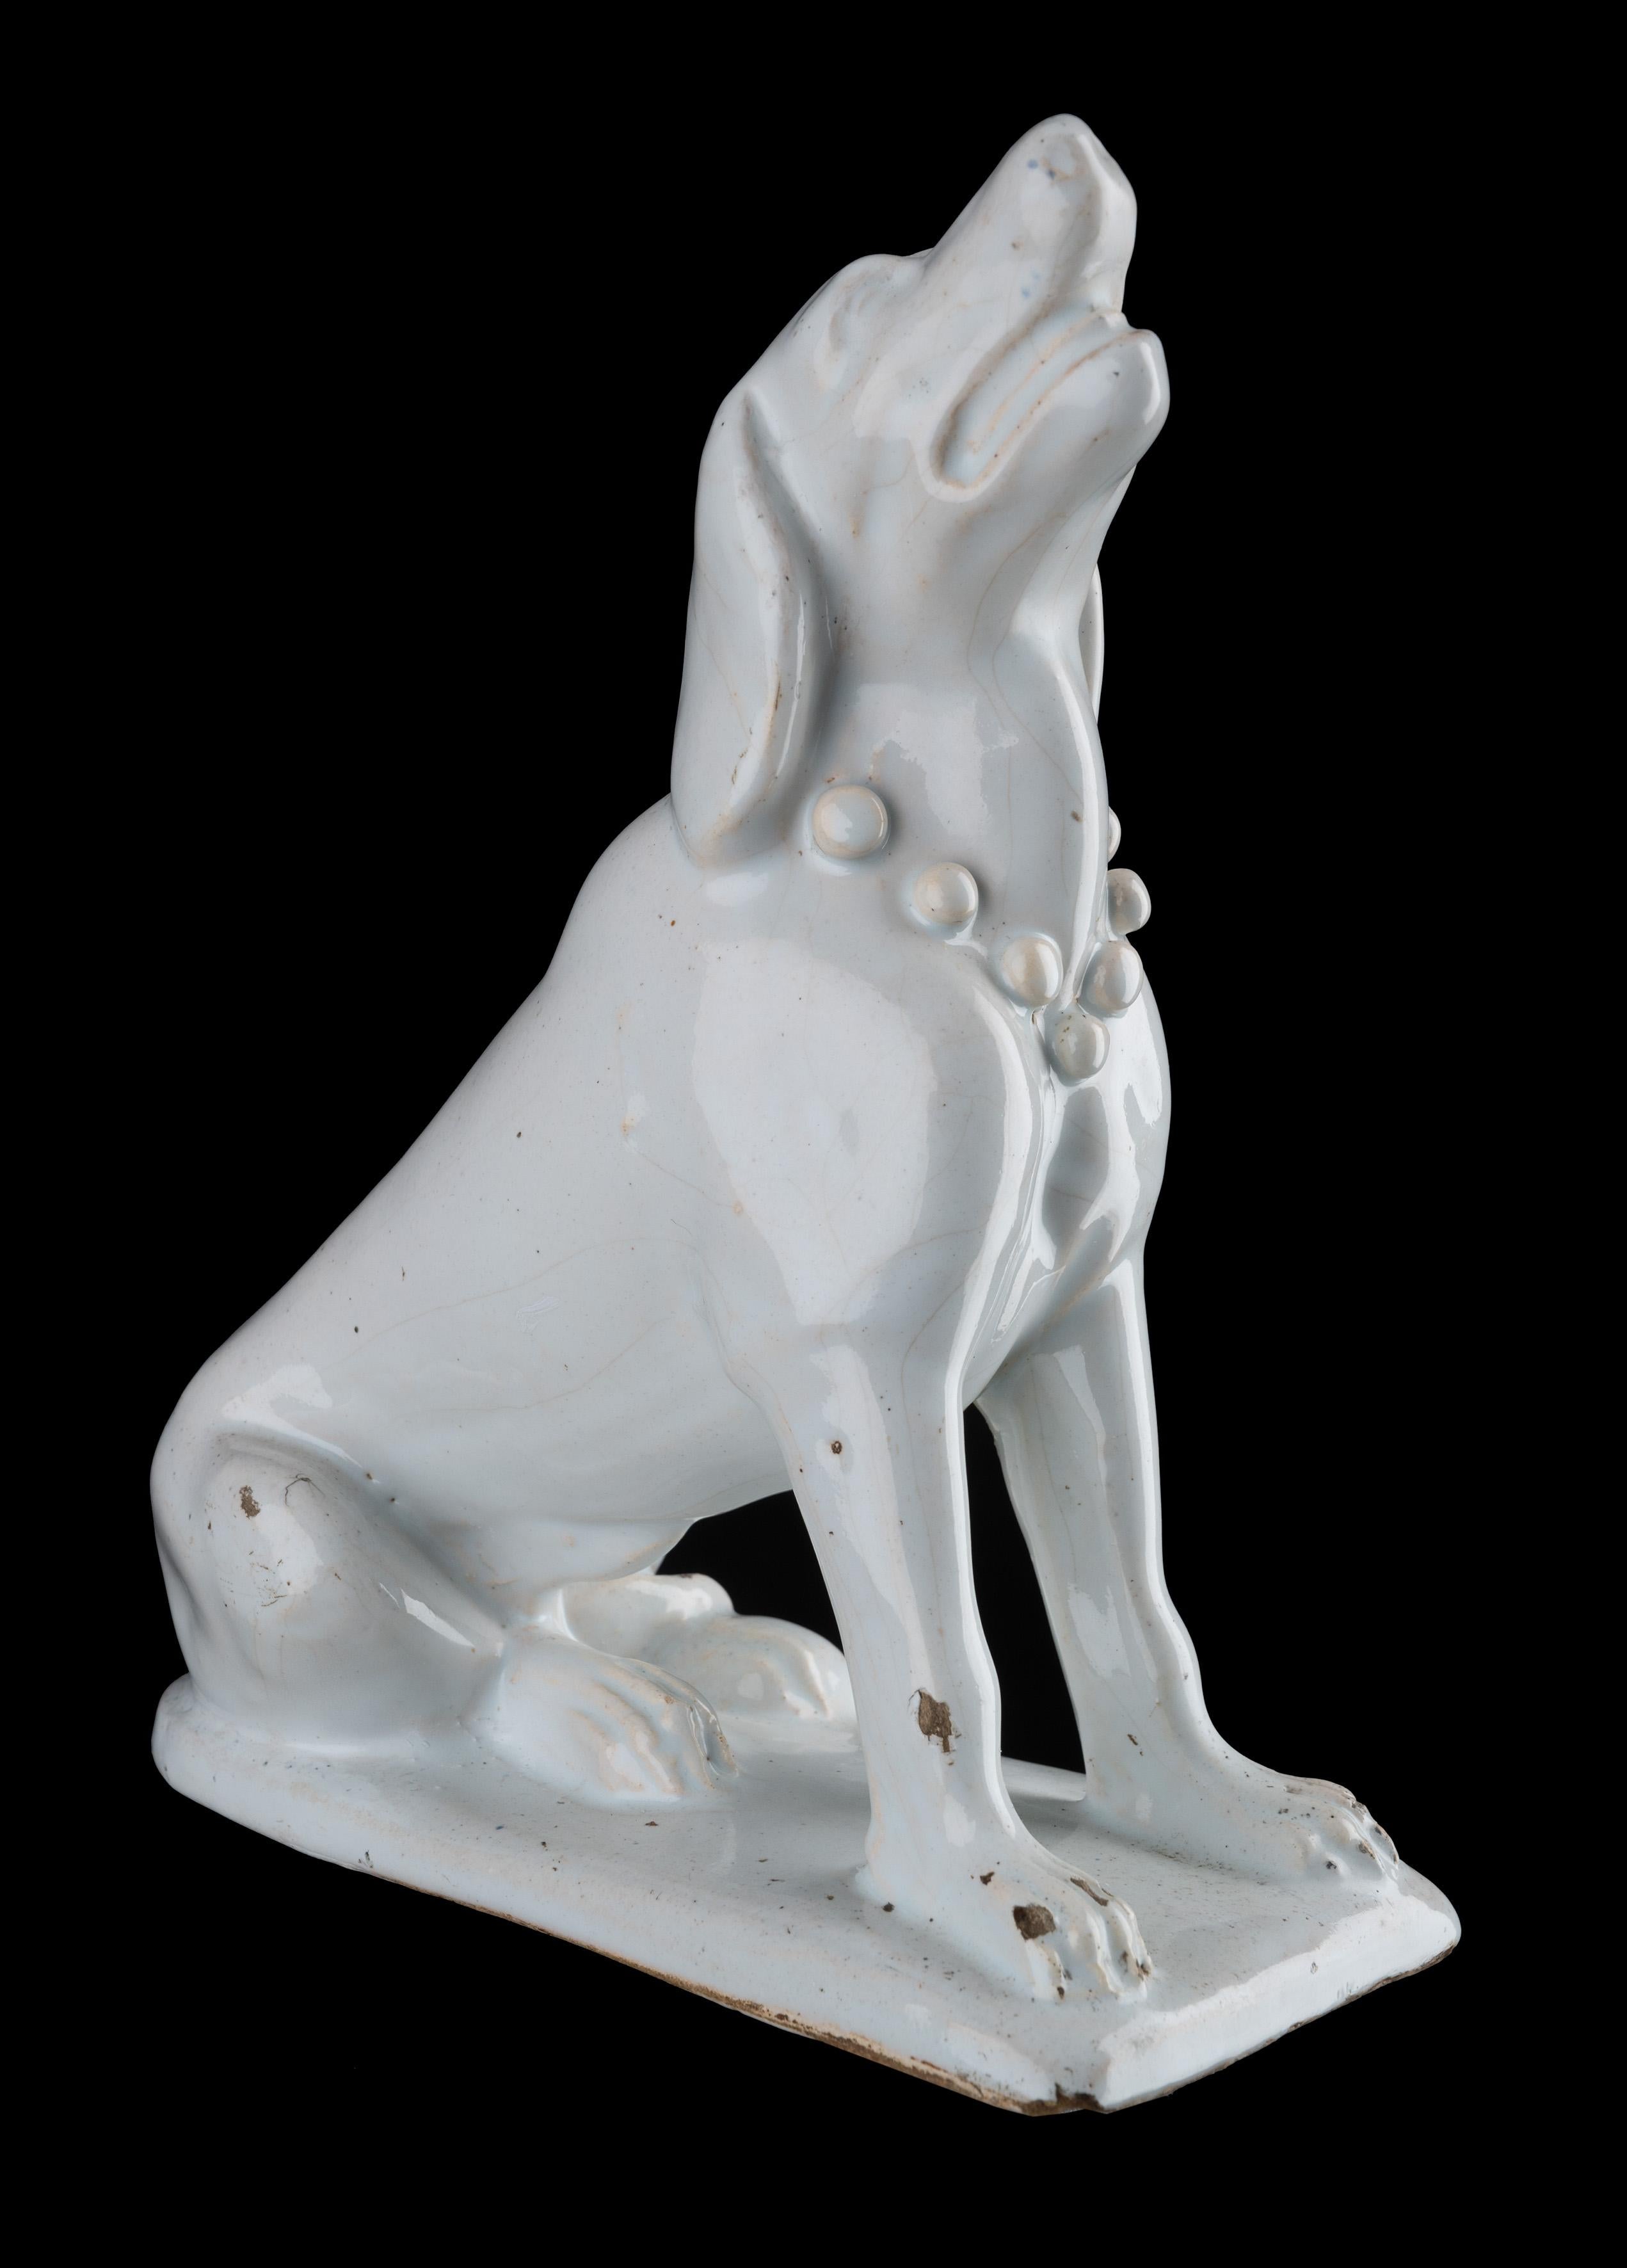 Niederländische Delfter Keramik Ein sitzender Hund. Delft, 1725-1775

Der modellierte Hund sitzt auf einem rechteckigen Sockel mit abgerundetem Rücken und hat den Kopf erhoben und die Schnauze geöffnet. Um seinen Hals trägt er ein Halsband mit